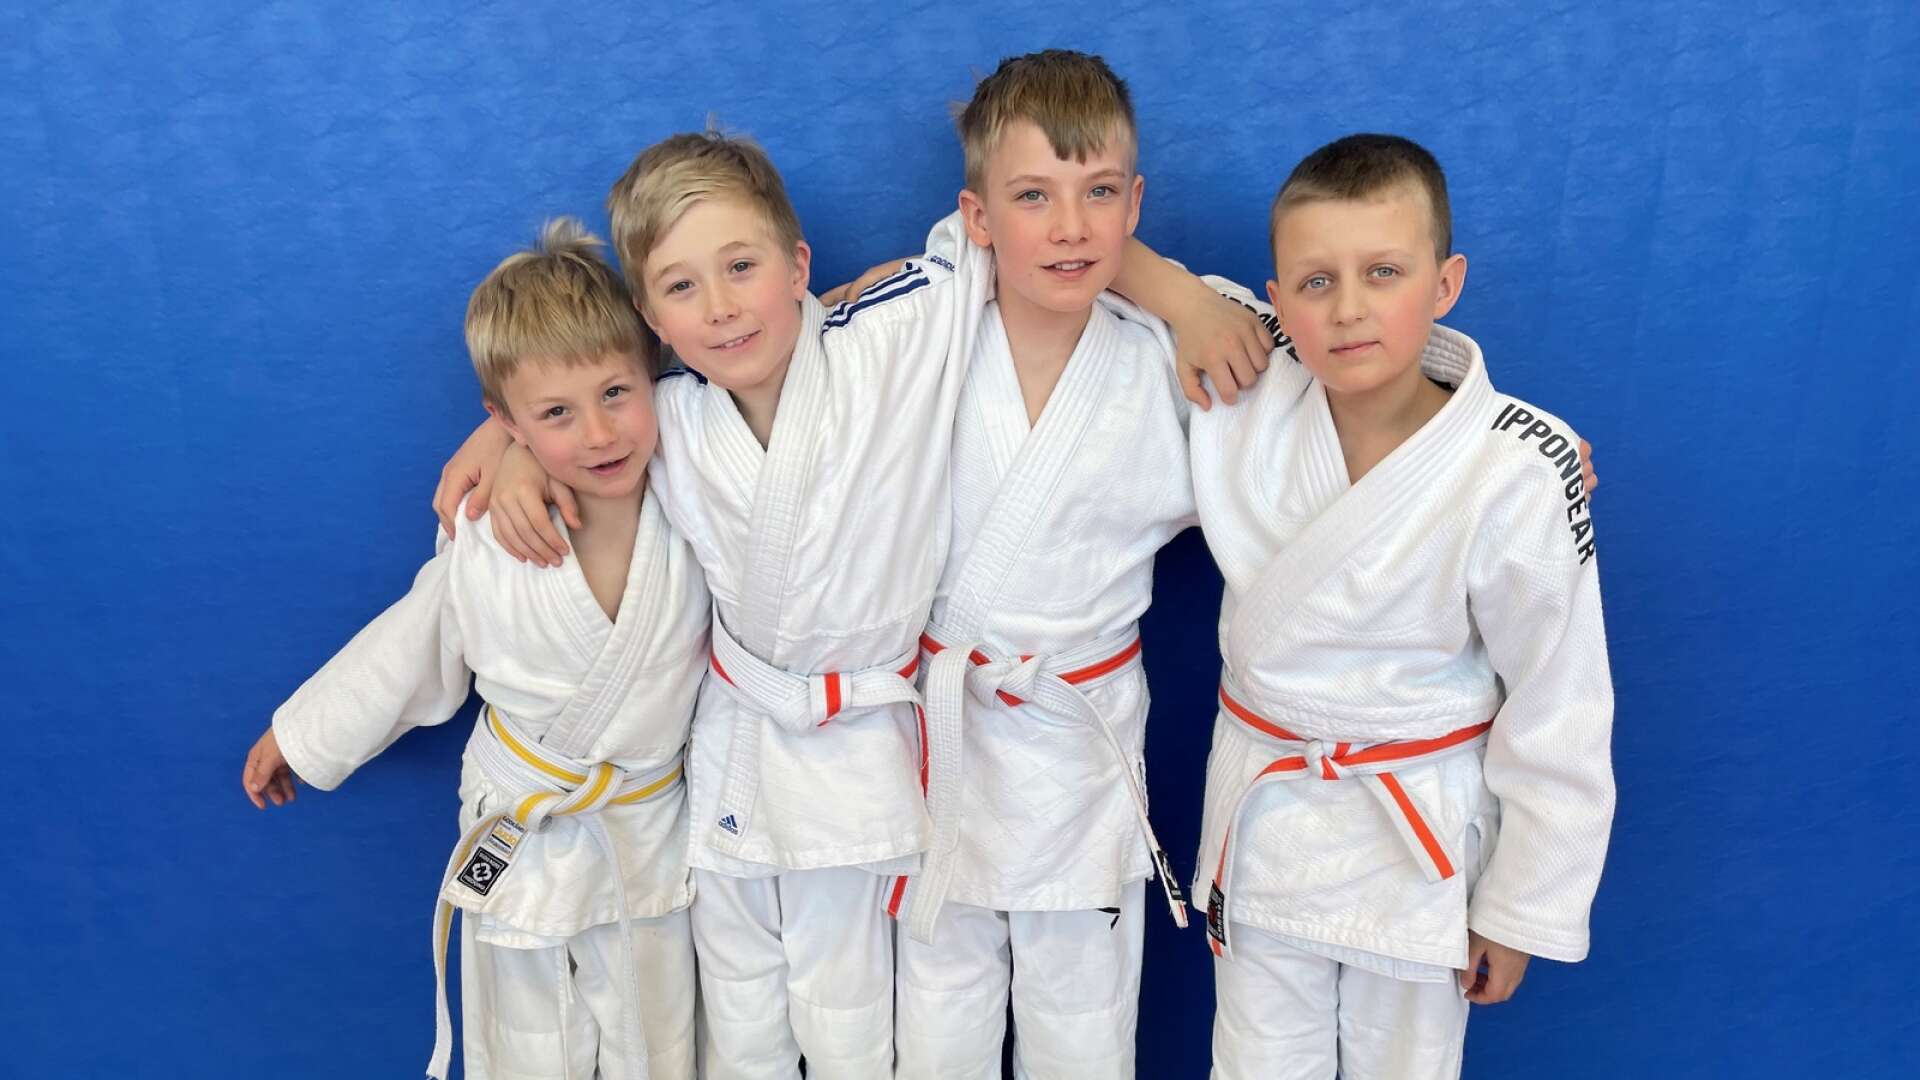 Mariestads judokillar från vänster, Oscar Carlsson, John Carlsson, Elton Geber, Theo Gilbertsson